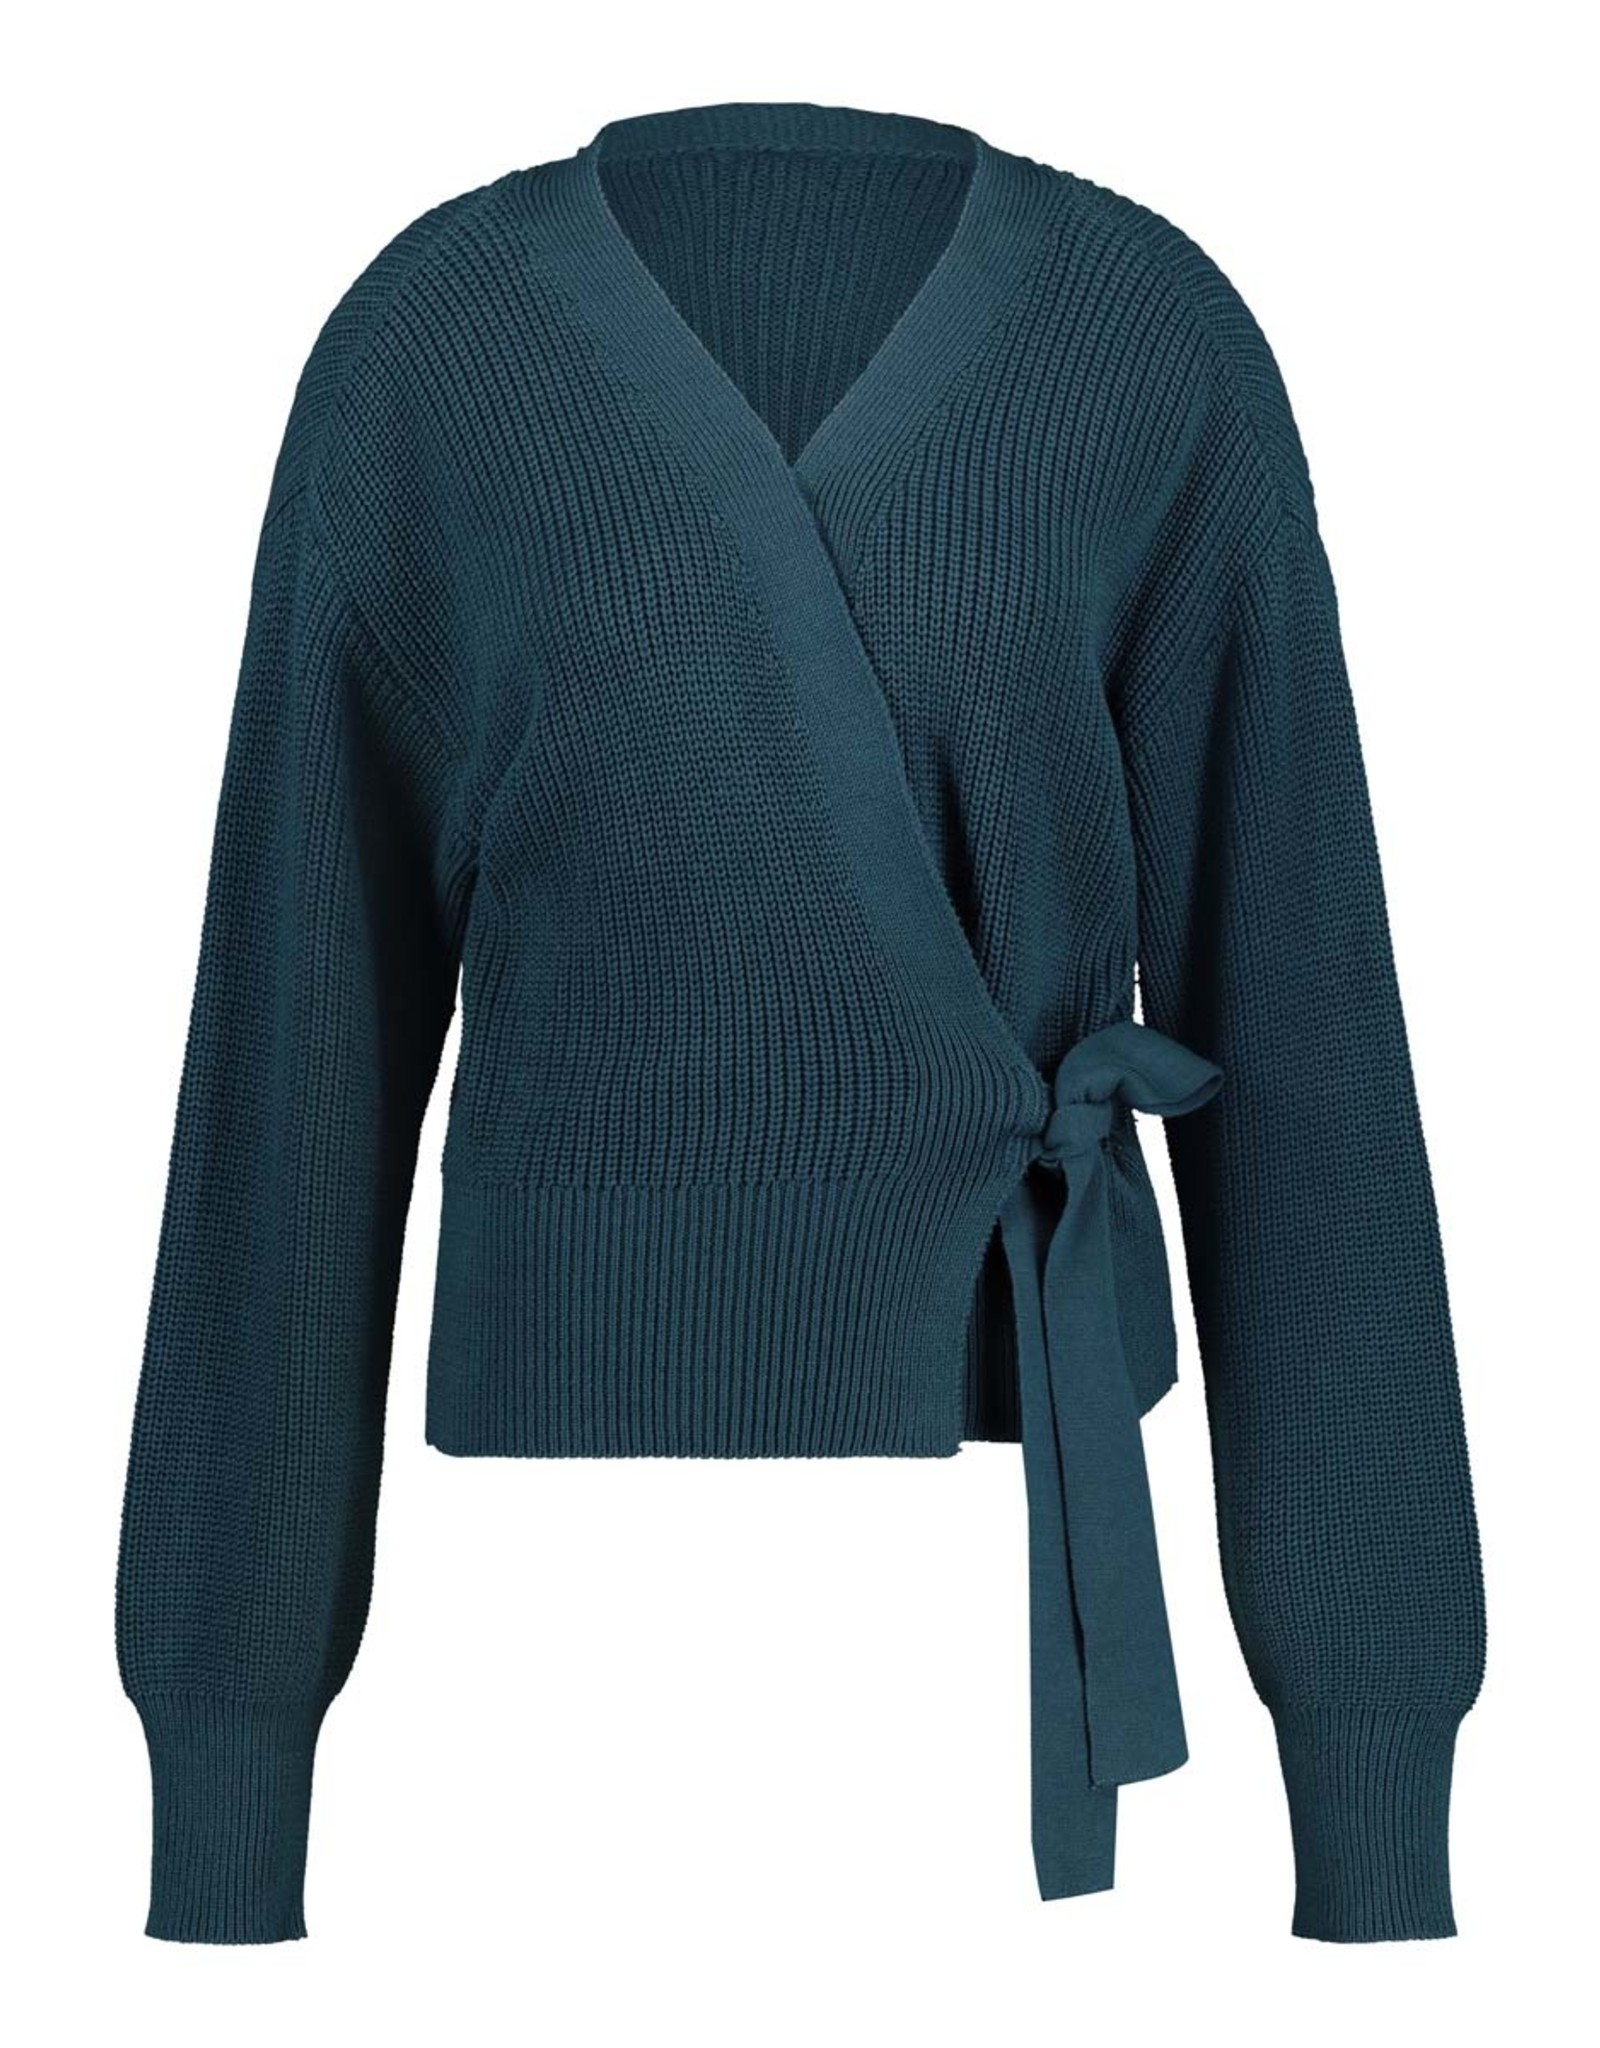 Cyell Chandail Cyell Wrap knit 150133